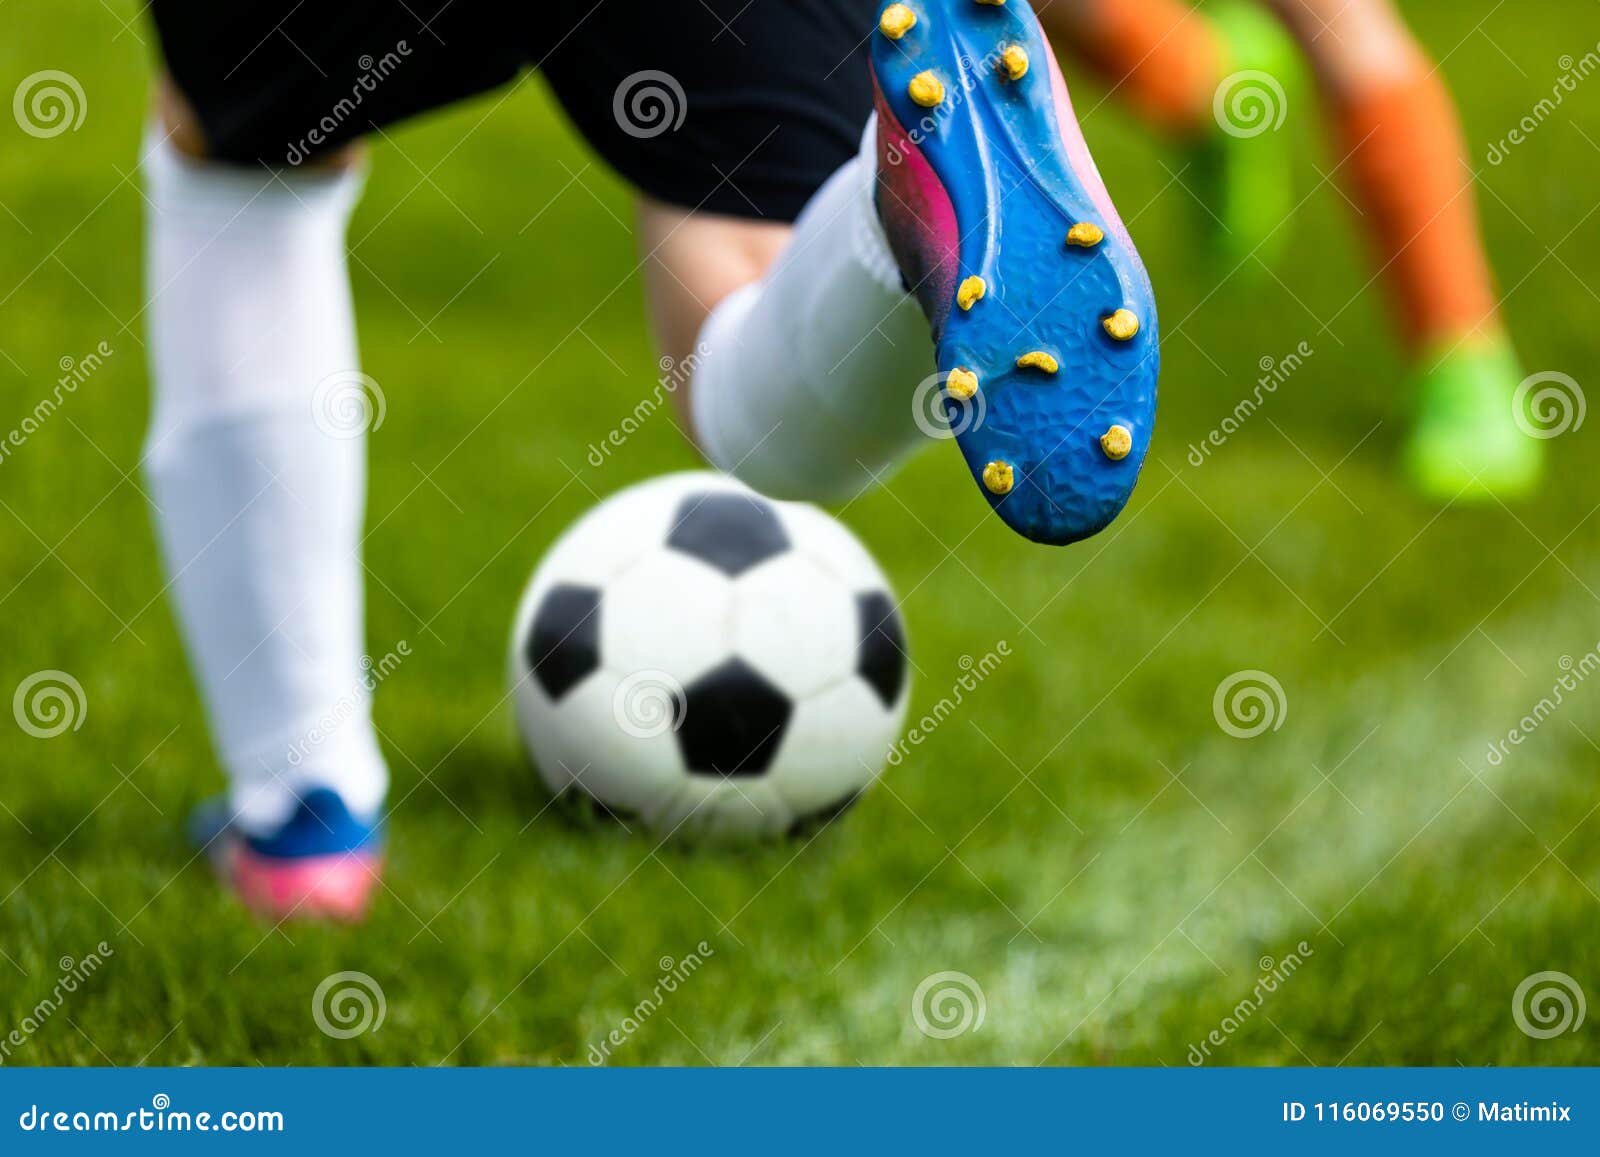 soccer kick. footballer kicking ball on grass pitch. football soccer player hits a ball